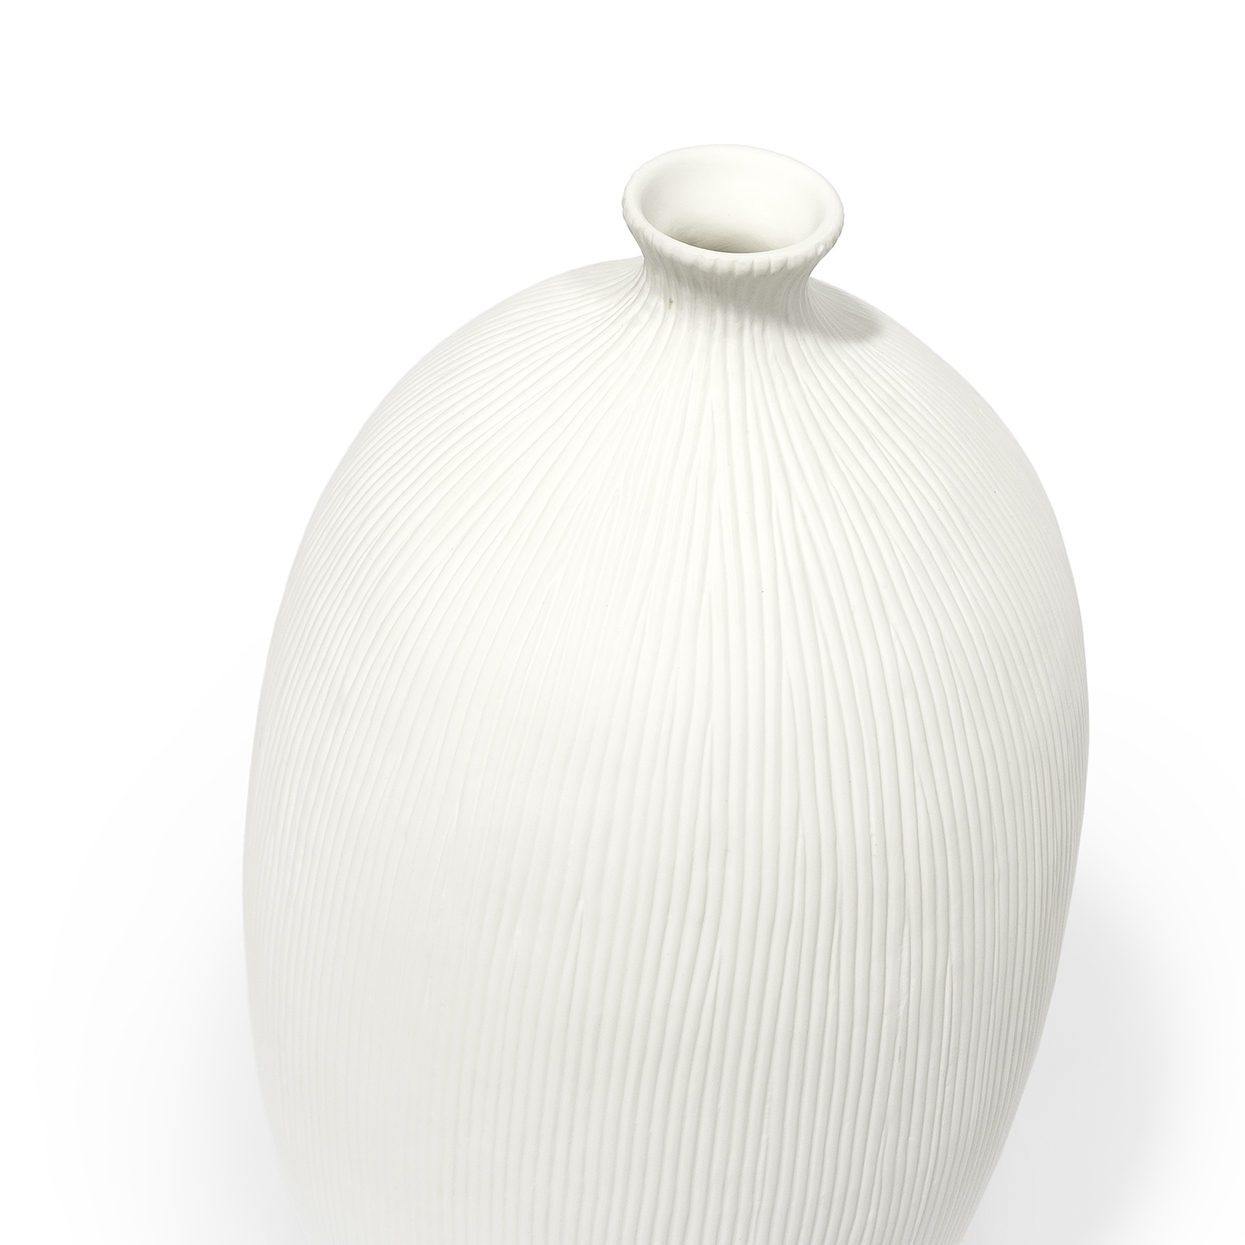 Palecek Kari Porcelain Vase - Tall